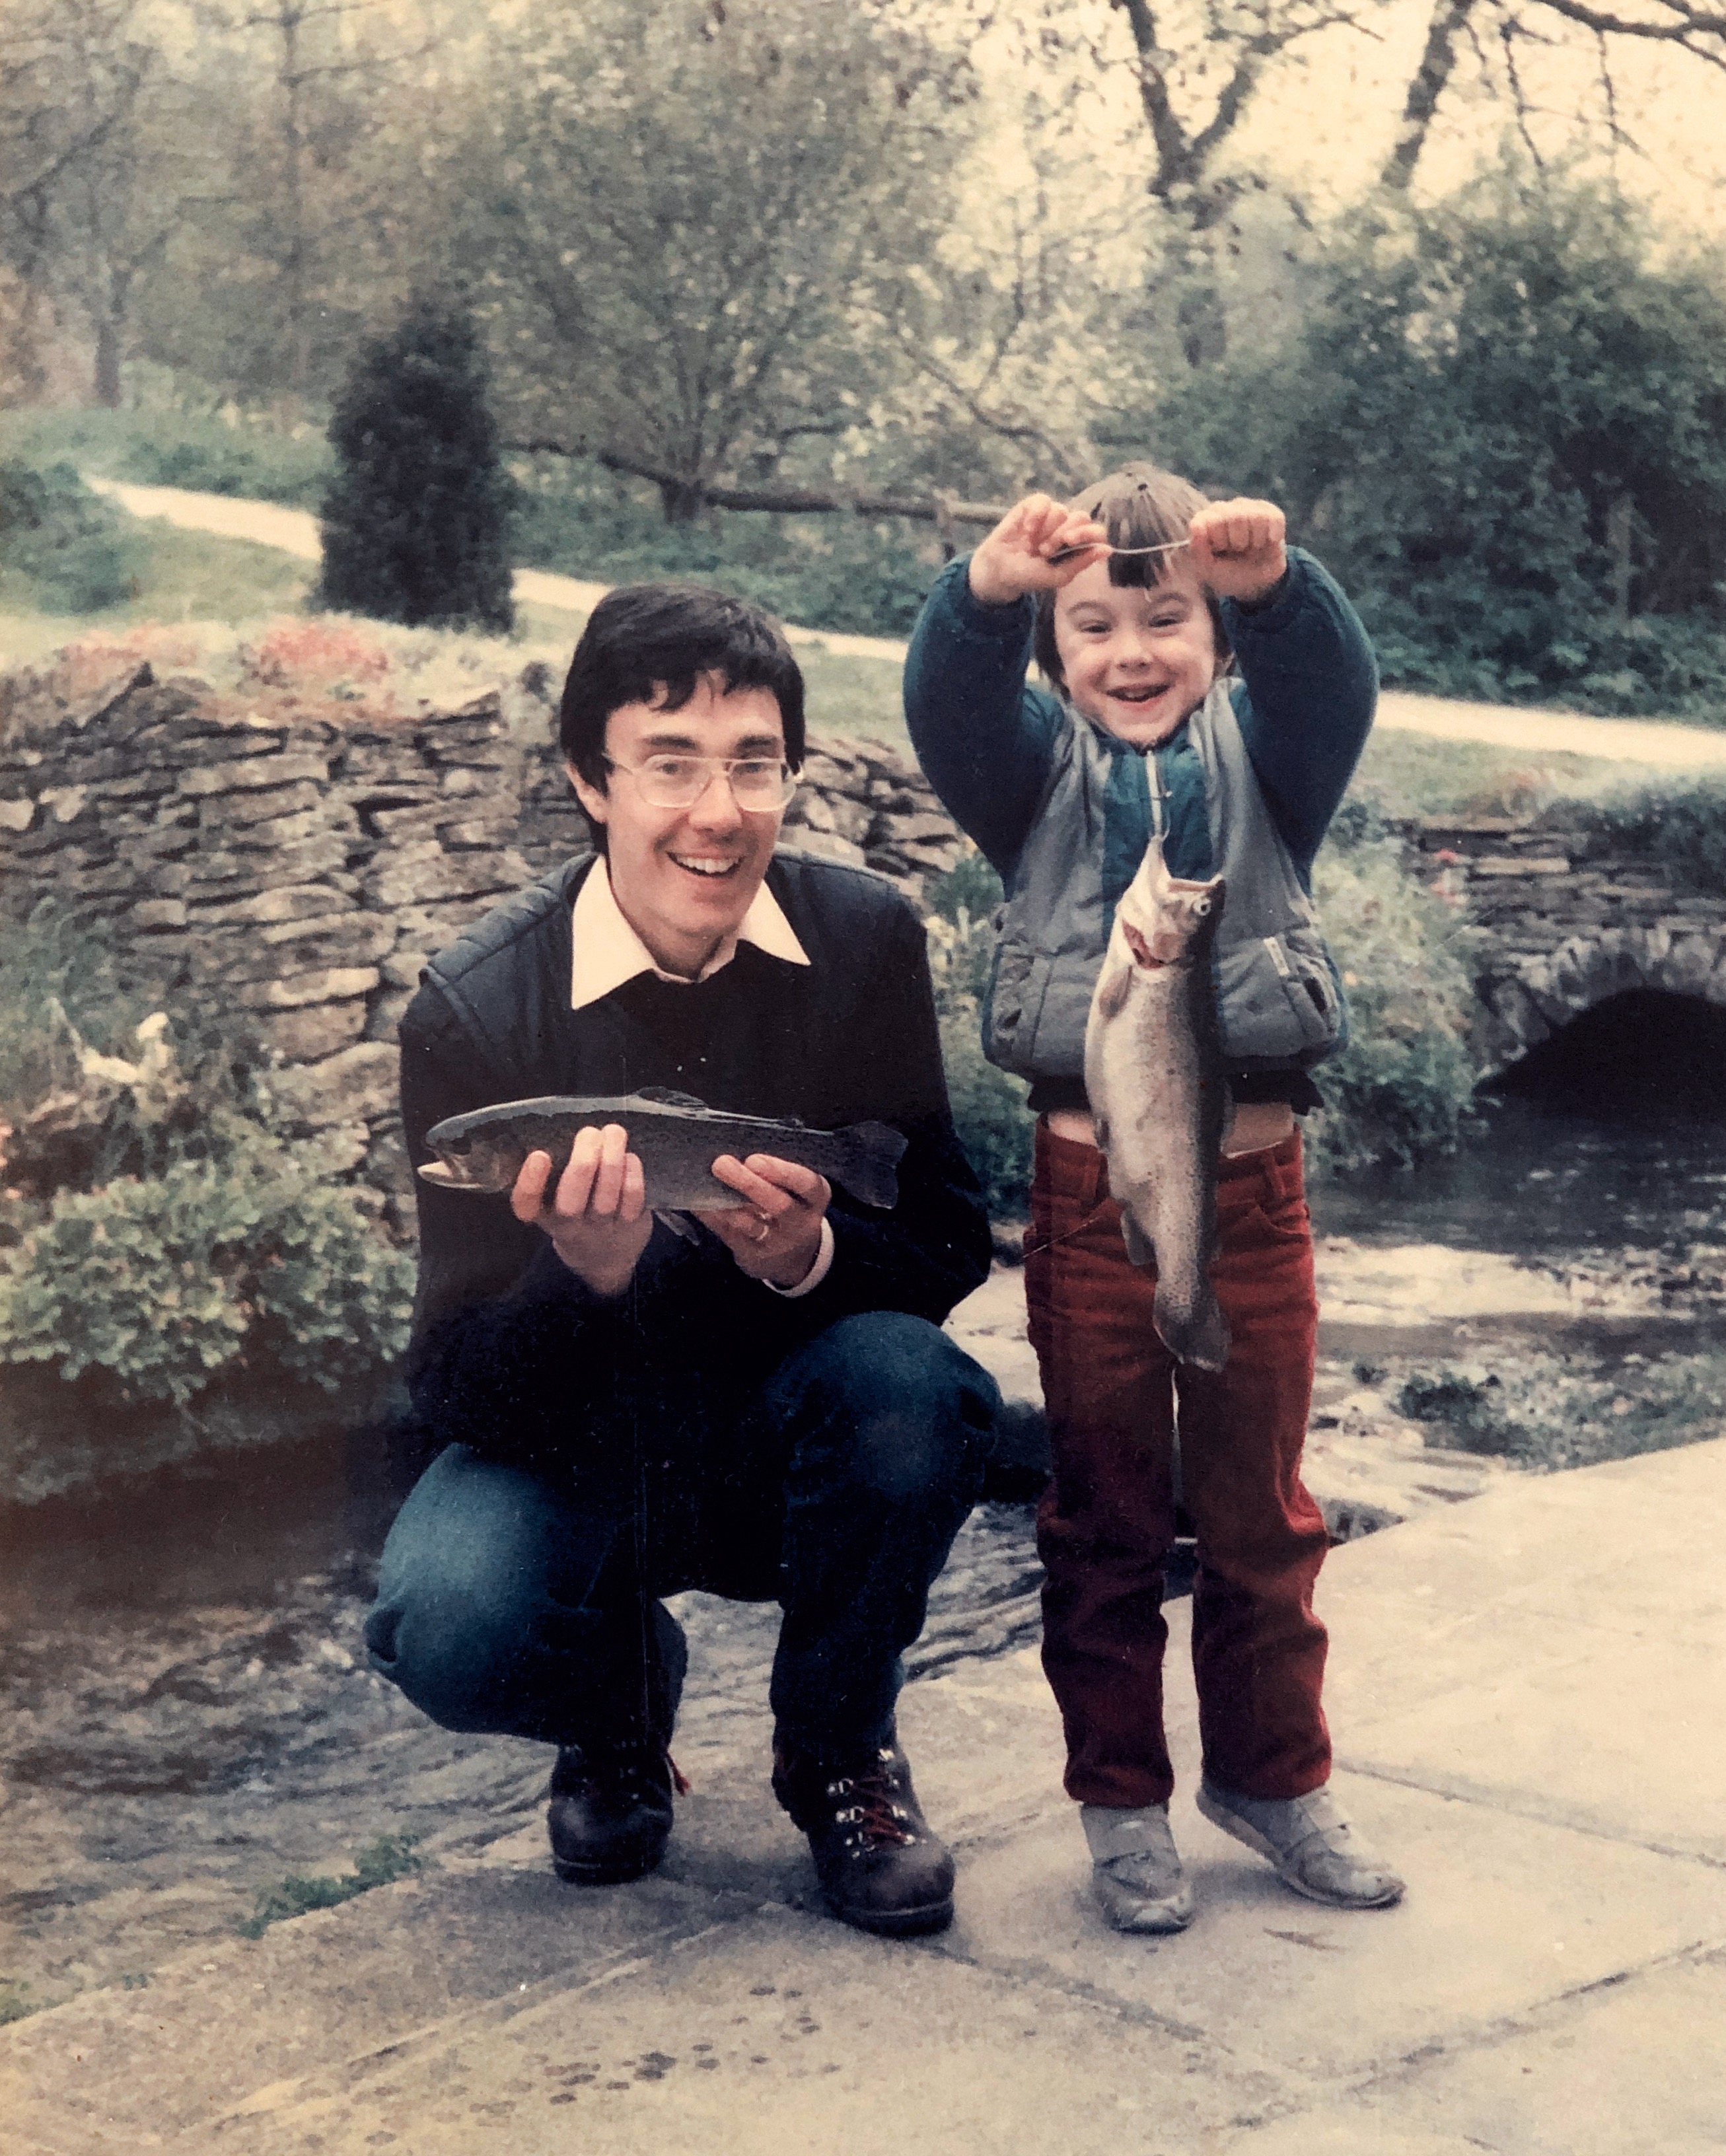 Daddy Mark with Joe at Blockley circa 1986